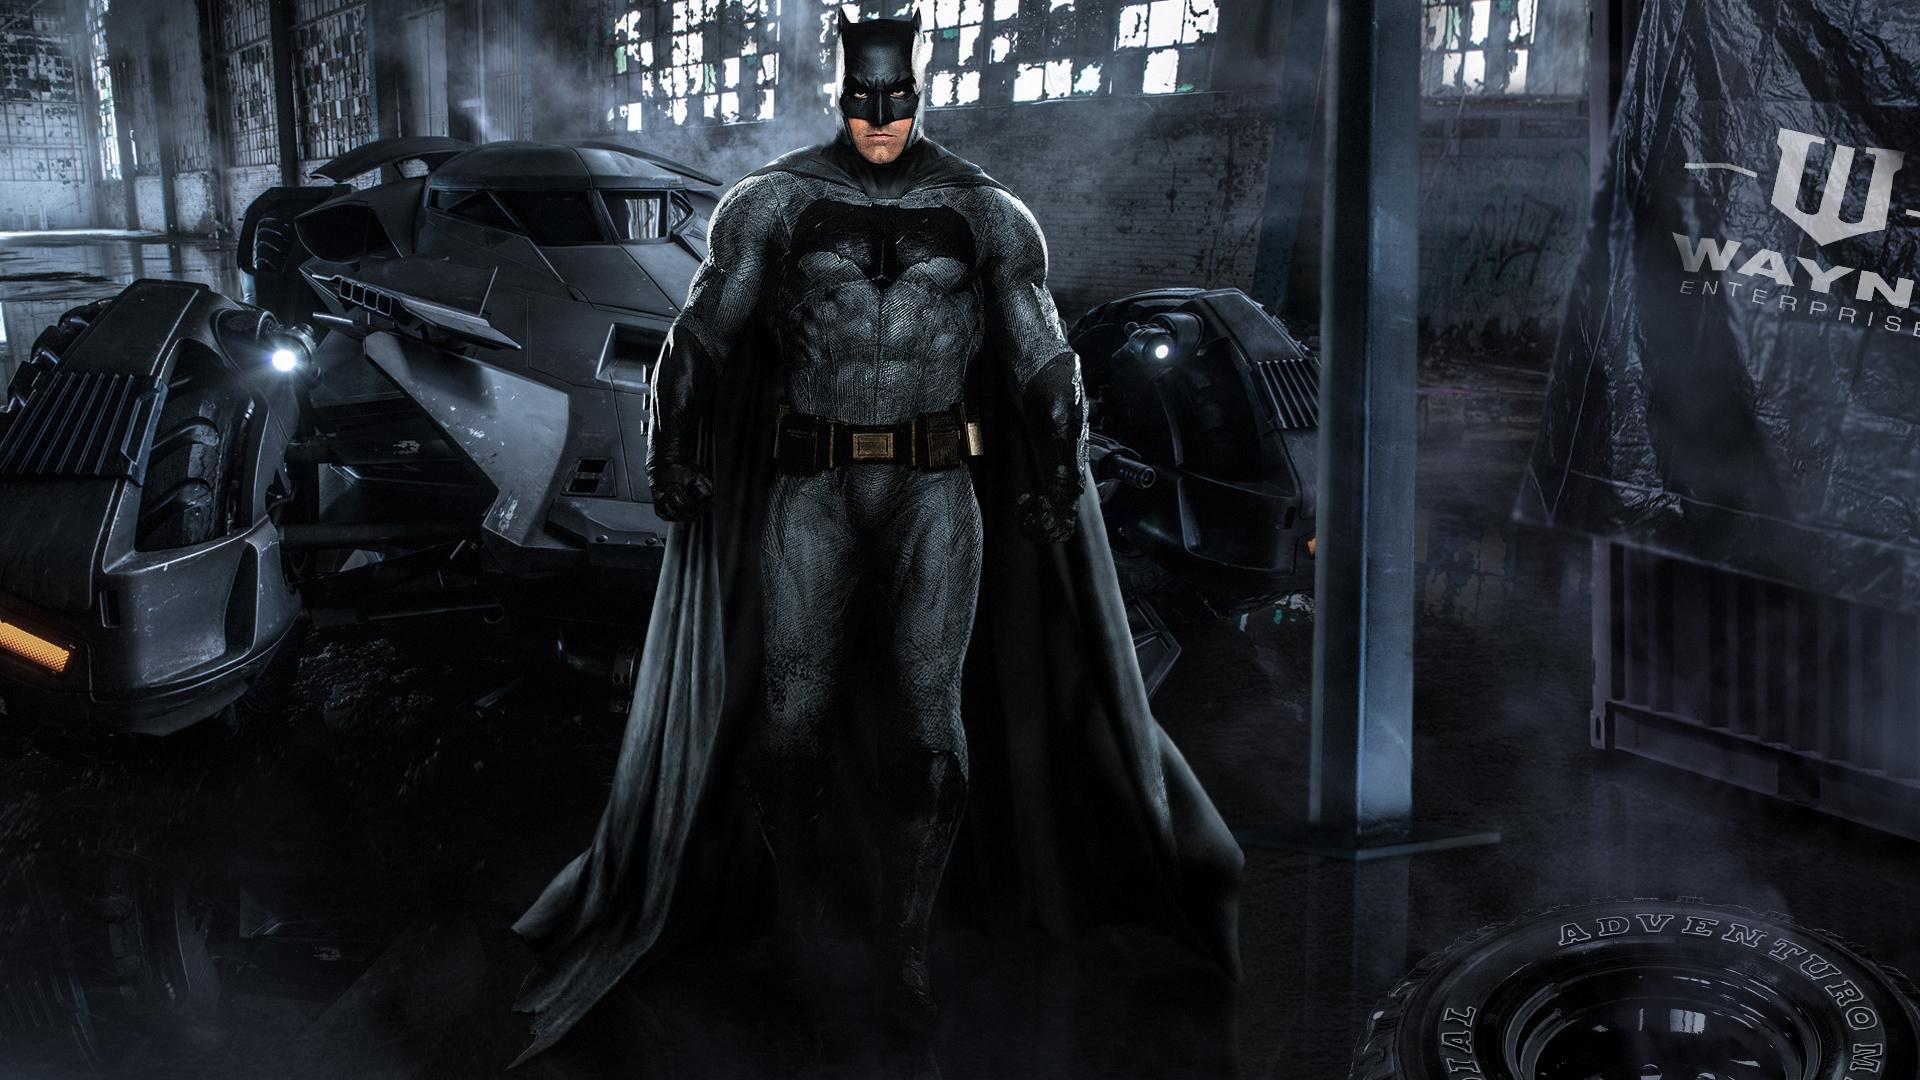 Ben Affleck Batman Costume Wallpapers - Top Free Ben ...